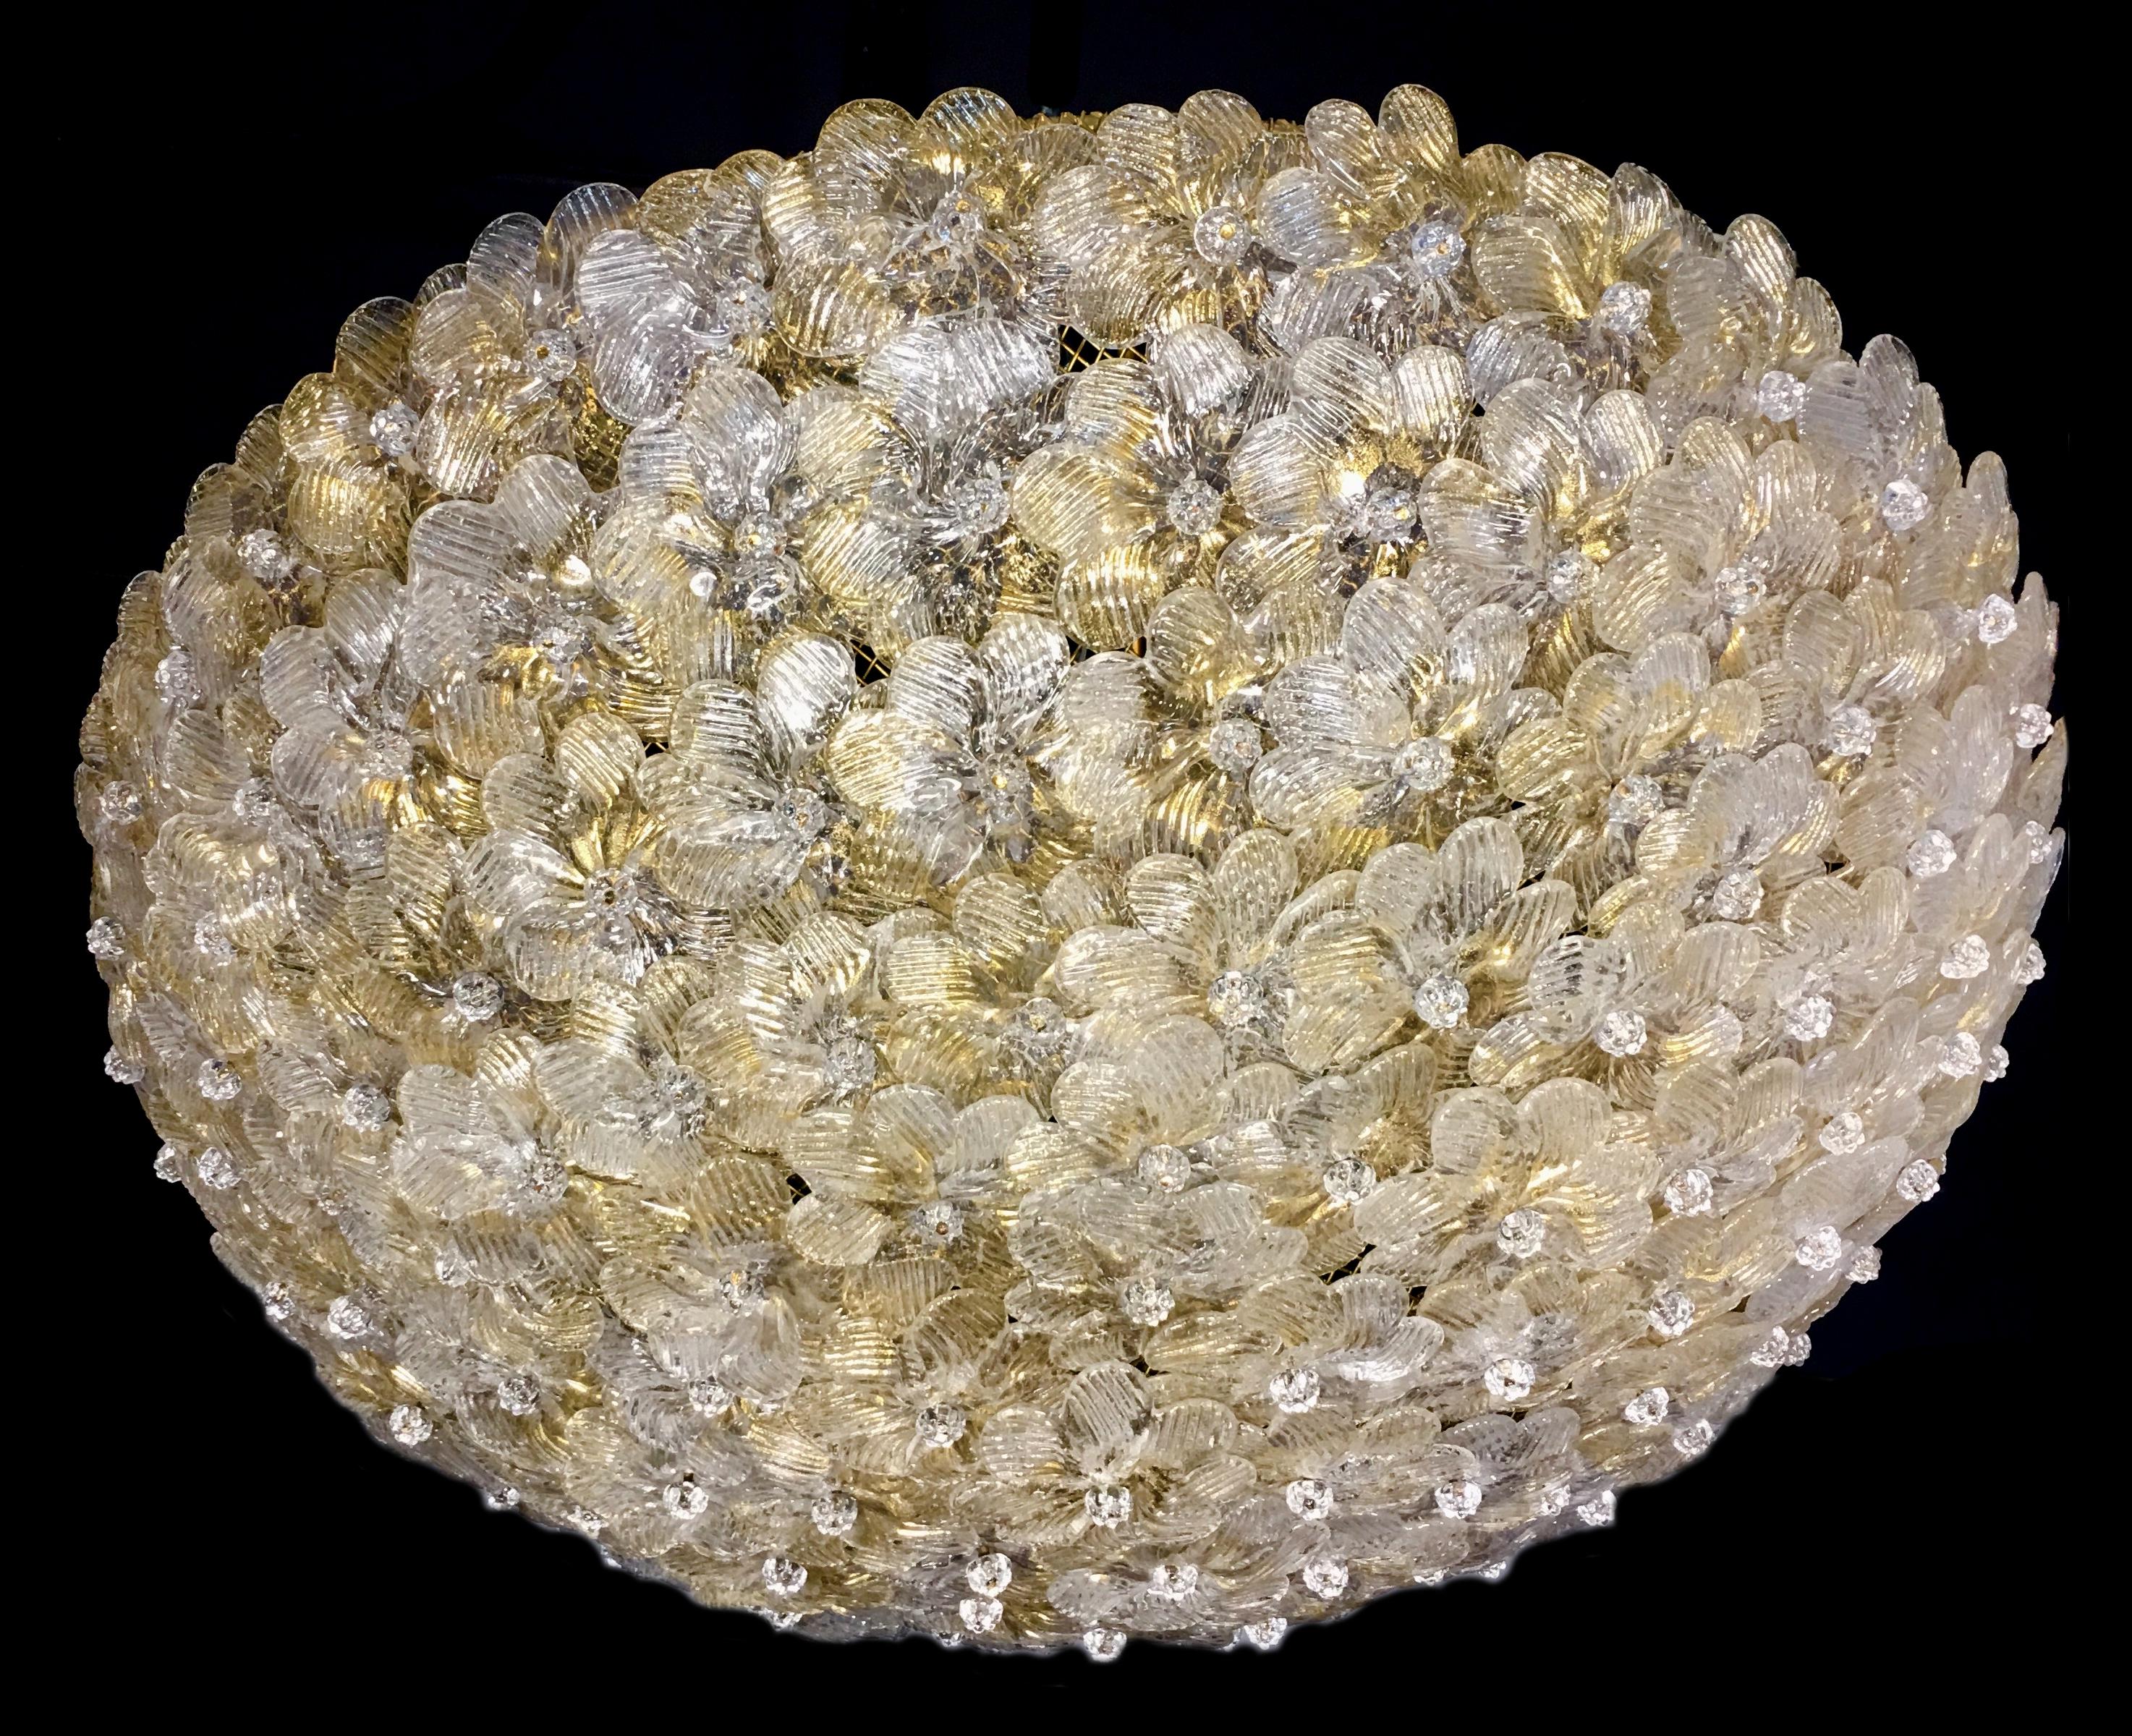 Plafond à panier de fleurs en verre vénitien Barovier & Toso.
Le plafonnier est composé de dizaines de petites roses en verre précieux de Murano avec des inclusions d'or.
Mesures : Diamètre 62 cm
Hauteur 20 cm.